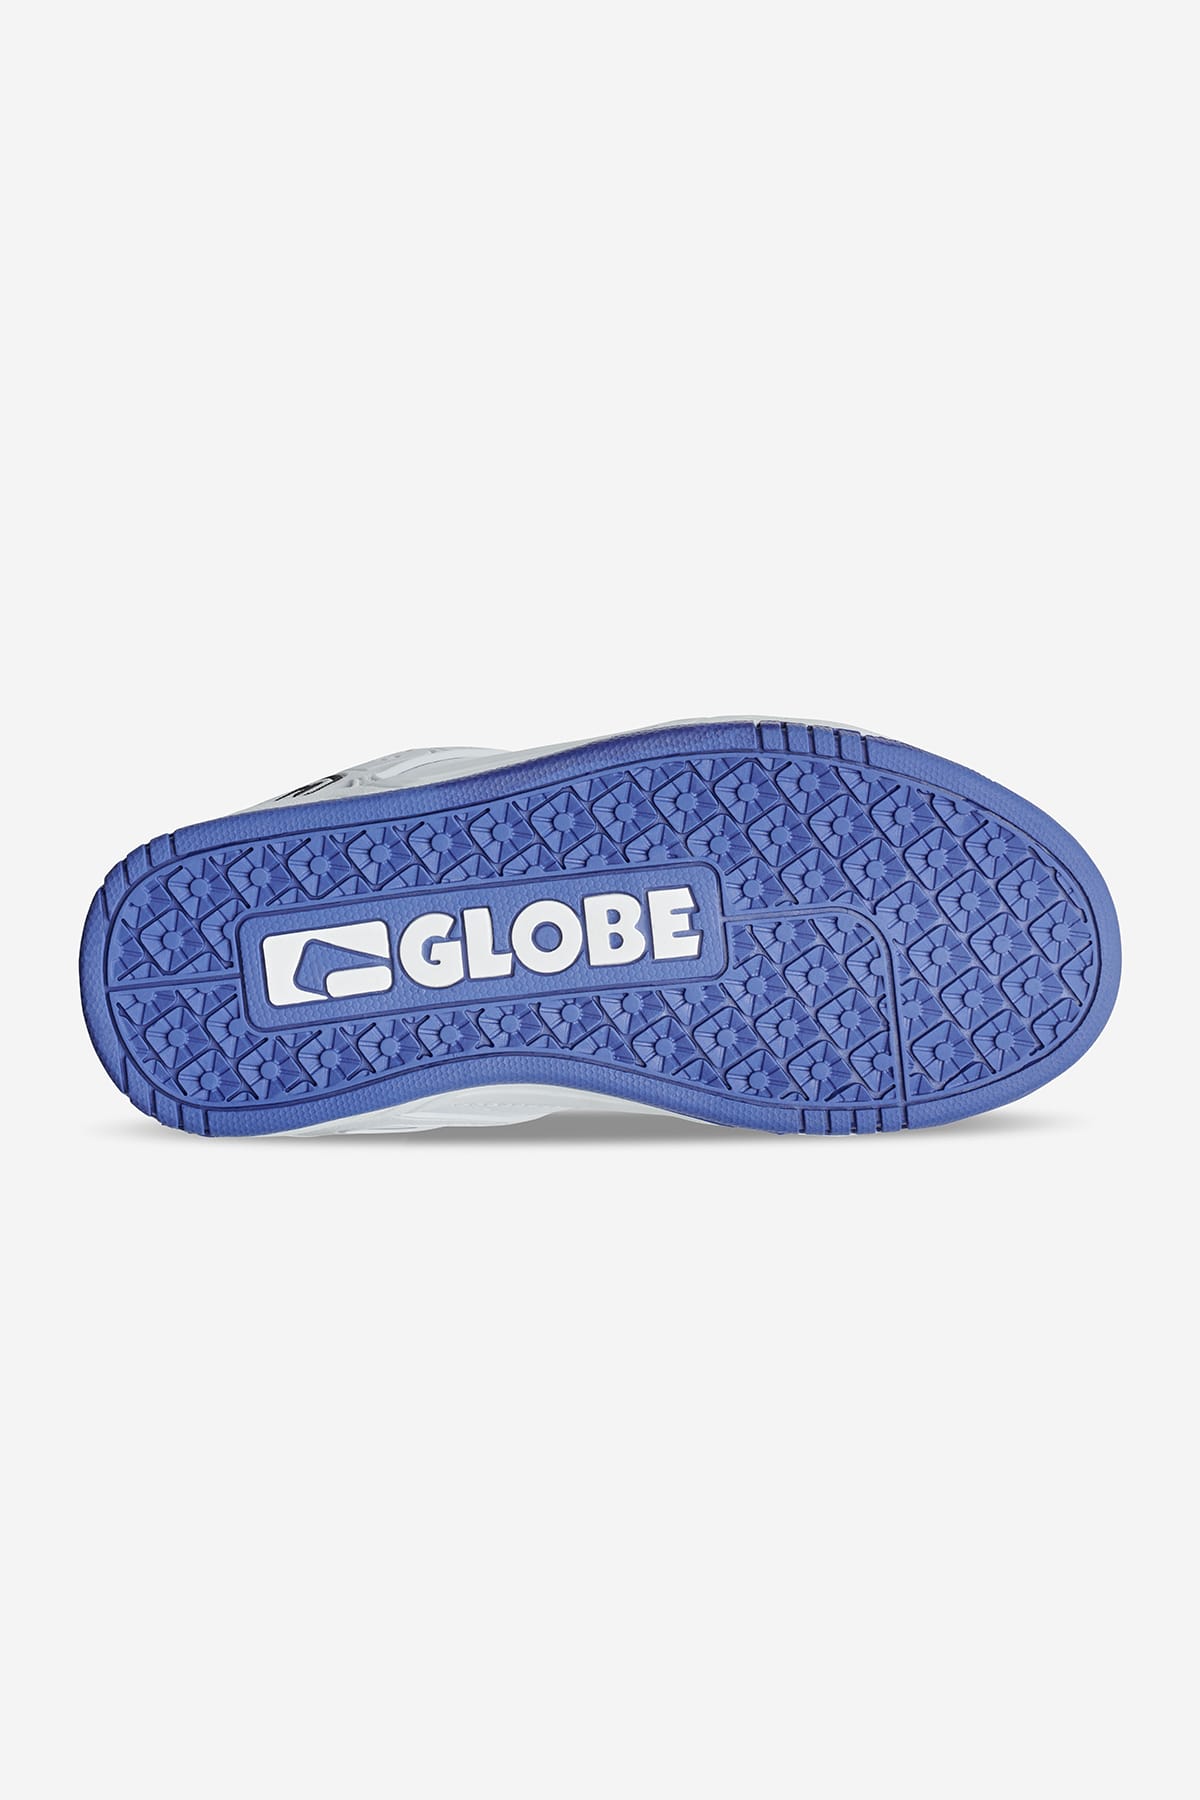 Globe - Tilt Kinderen - White/Cobalt - skateboard Schoenen